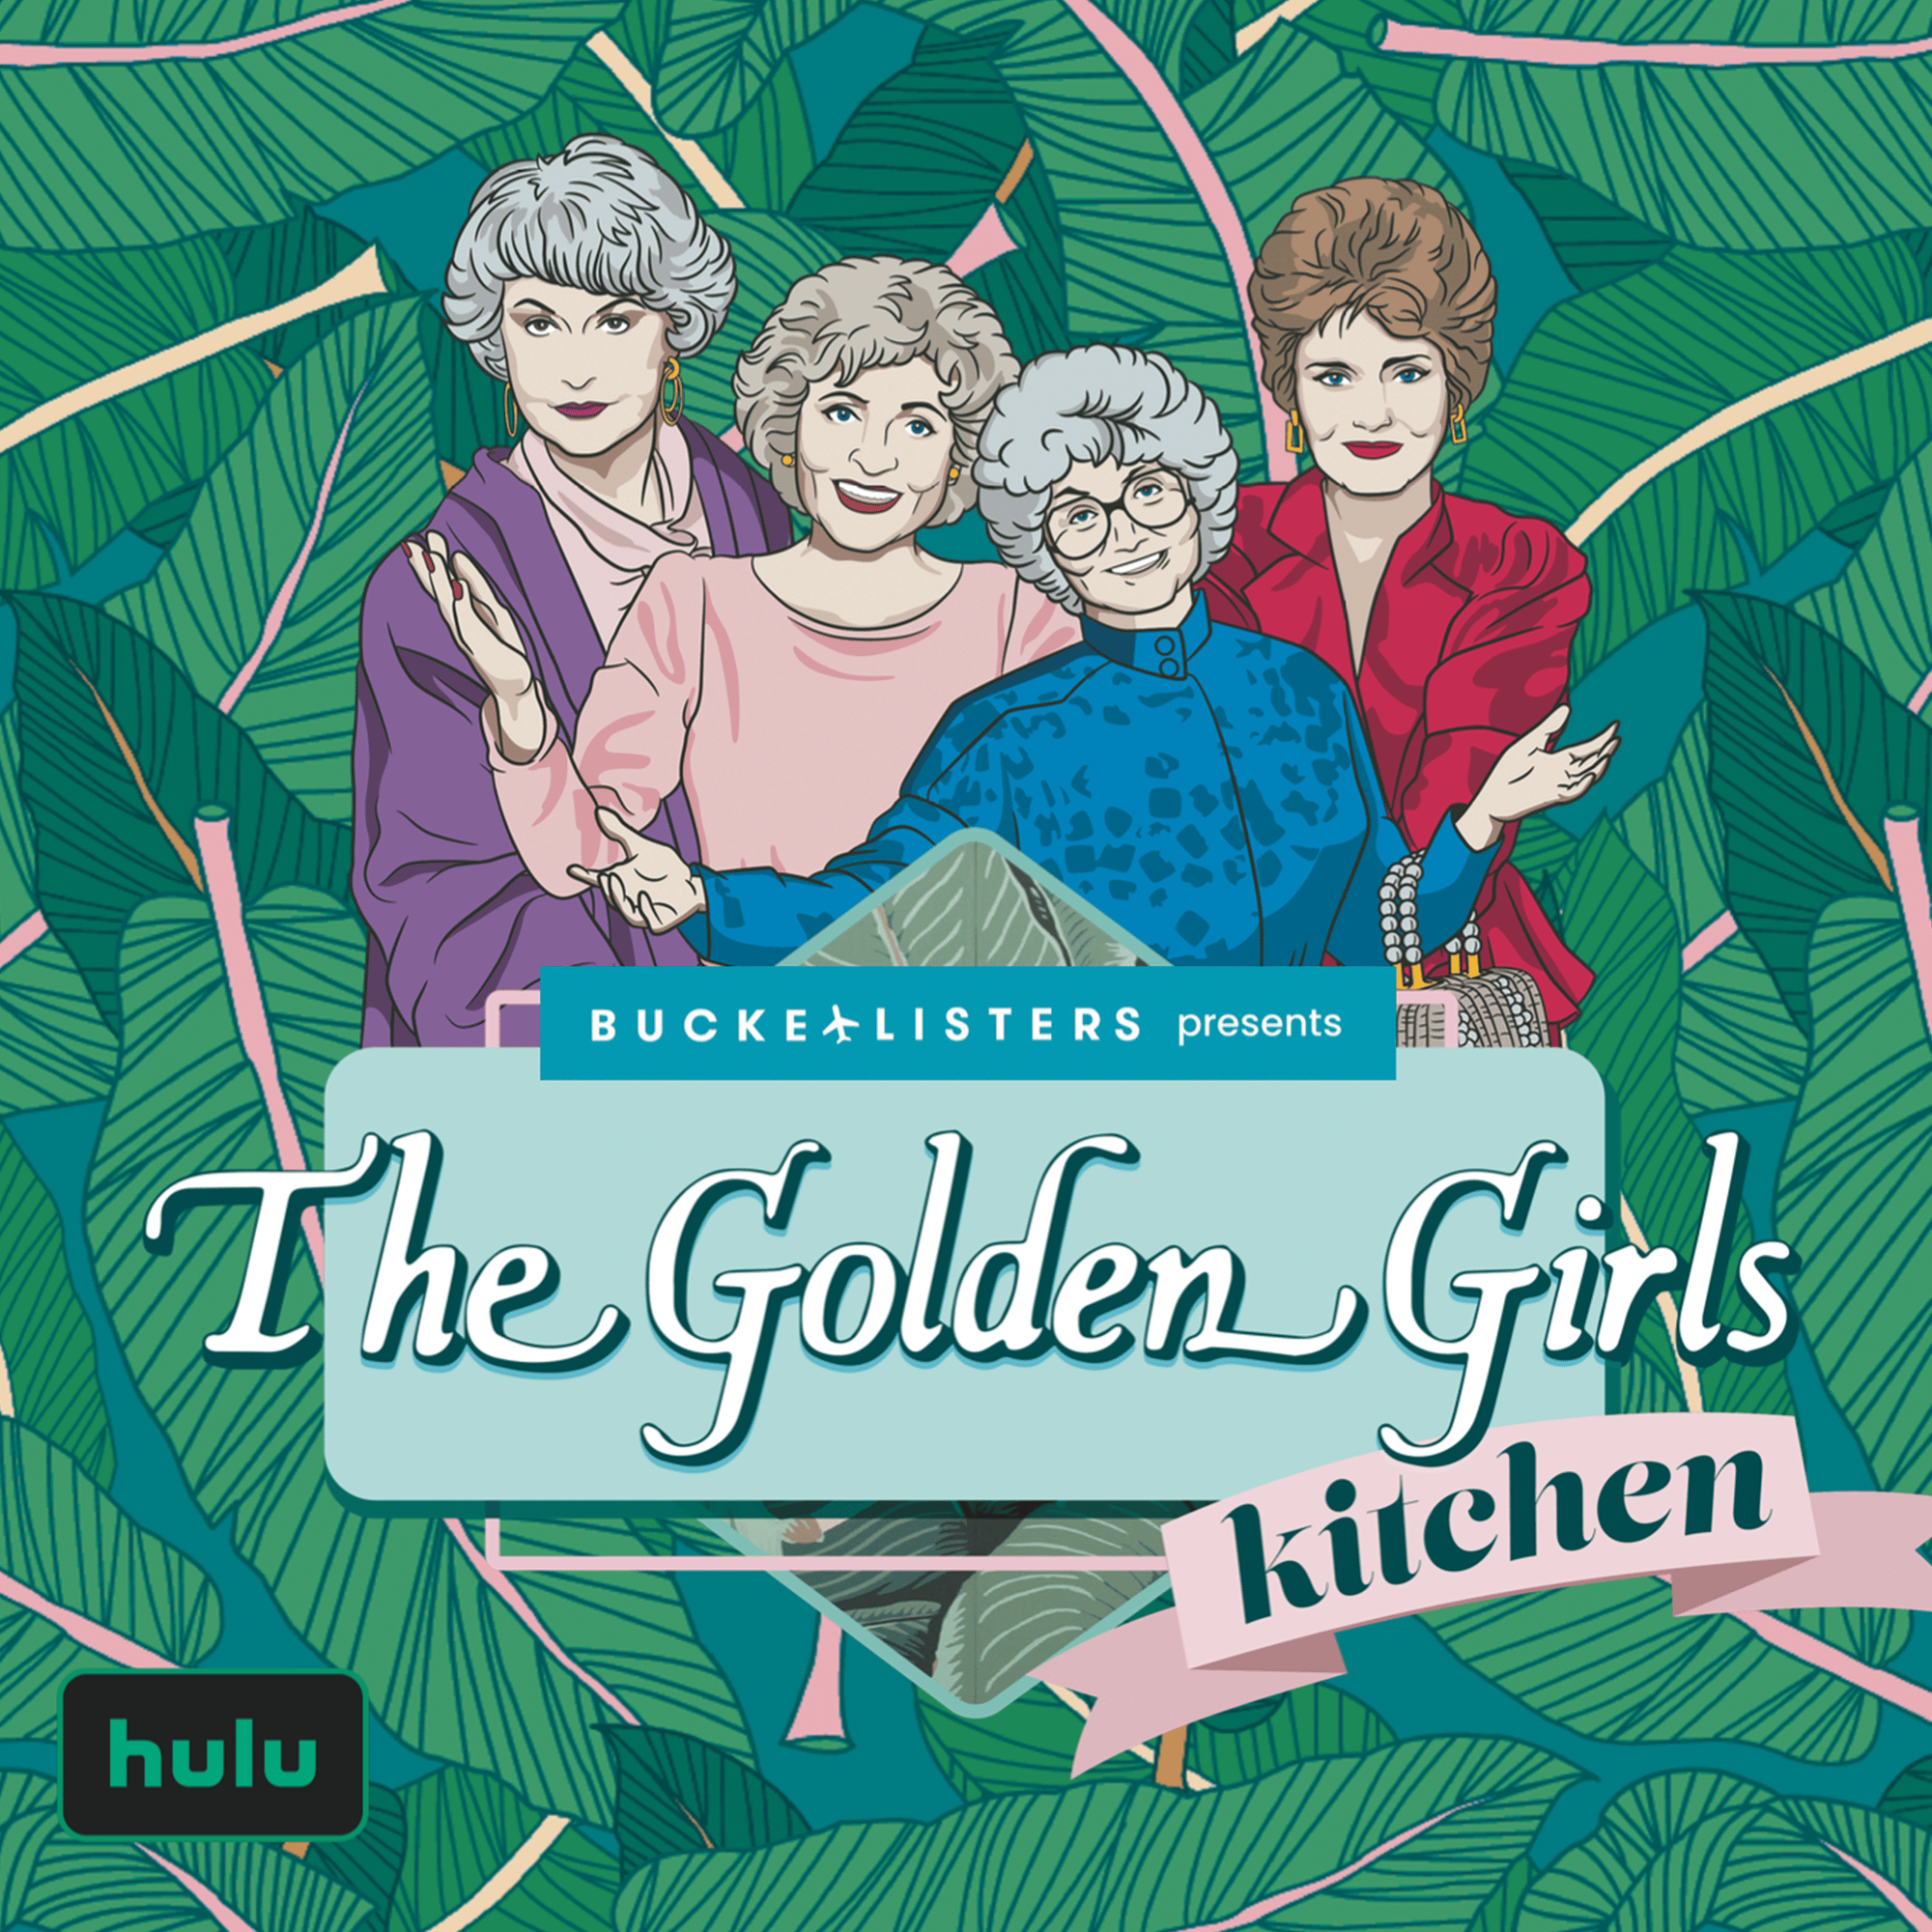 "The Golden Girls Kitchen" graphic